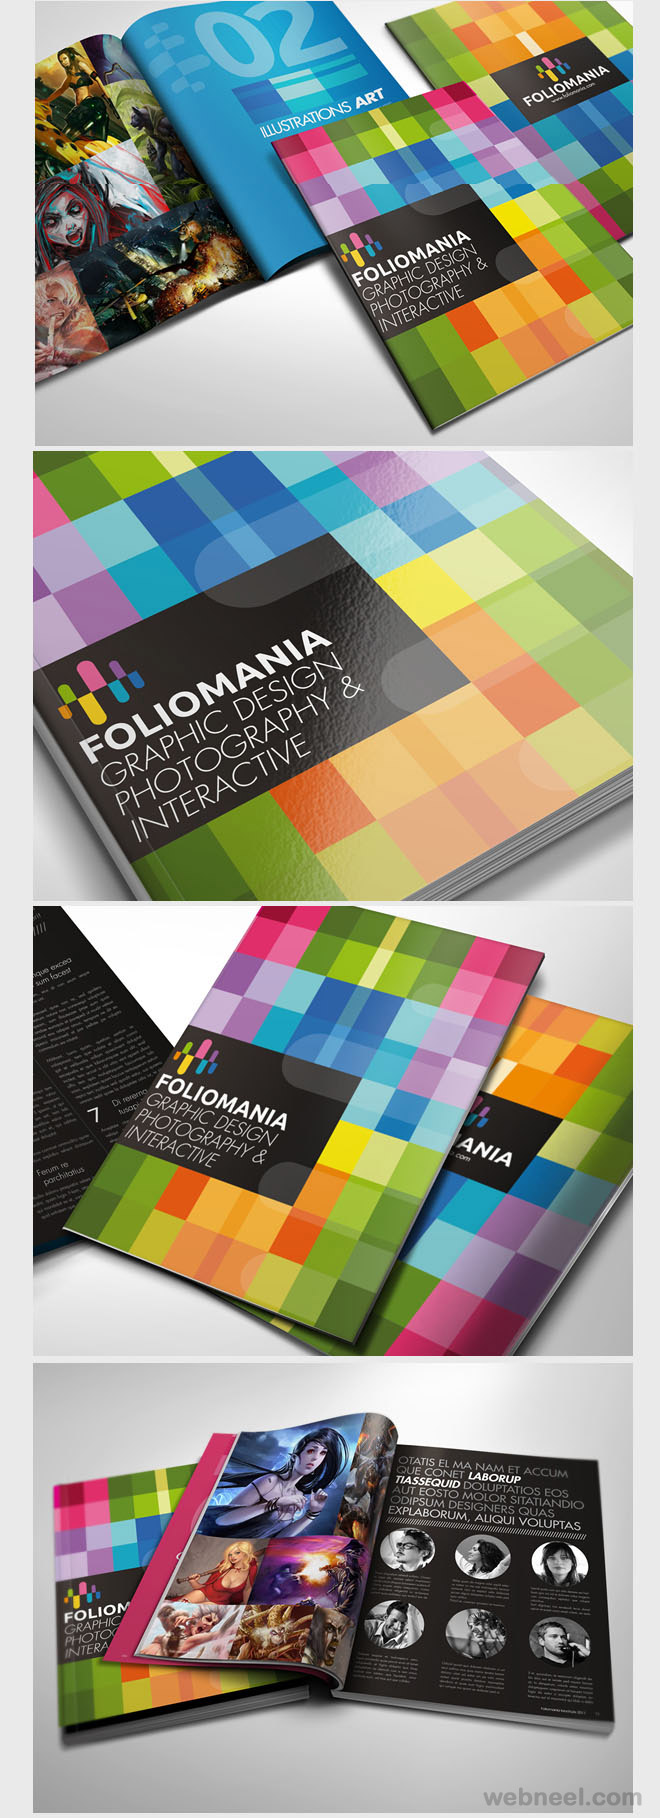 foliomania portfolio brochure